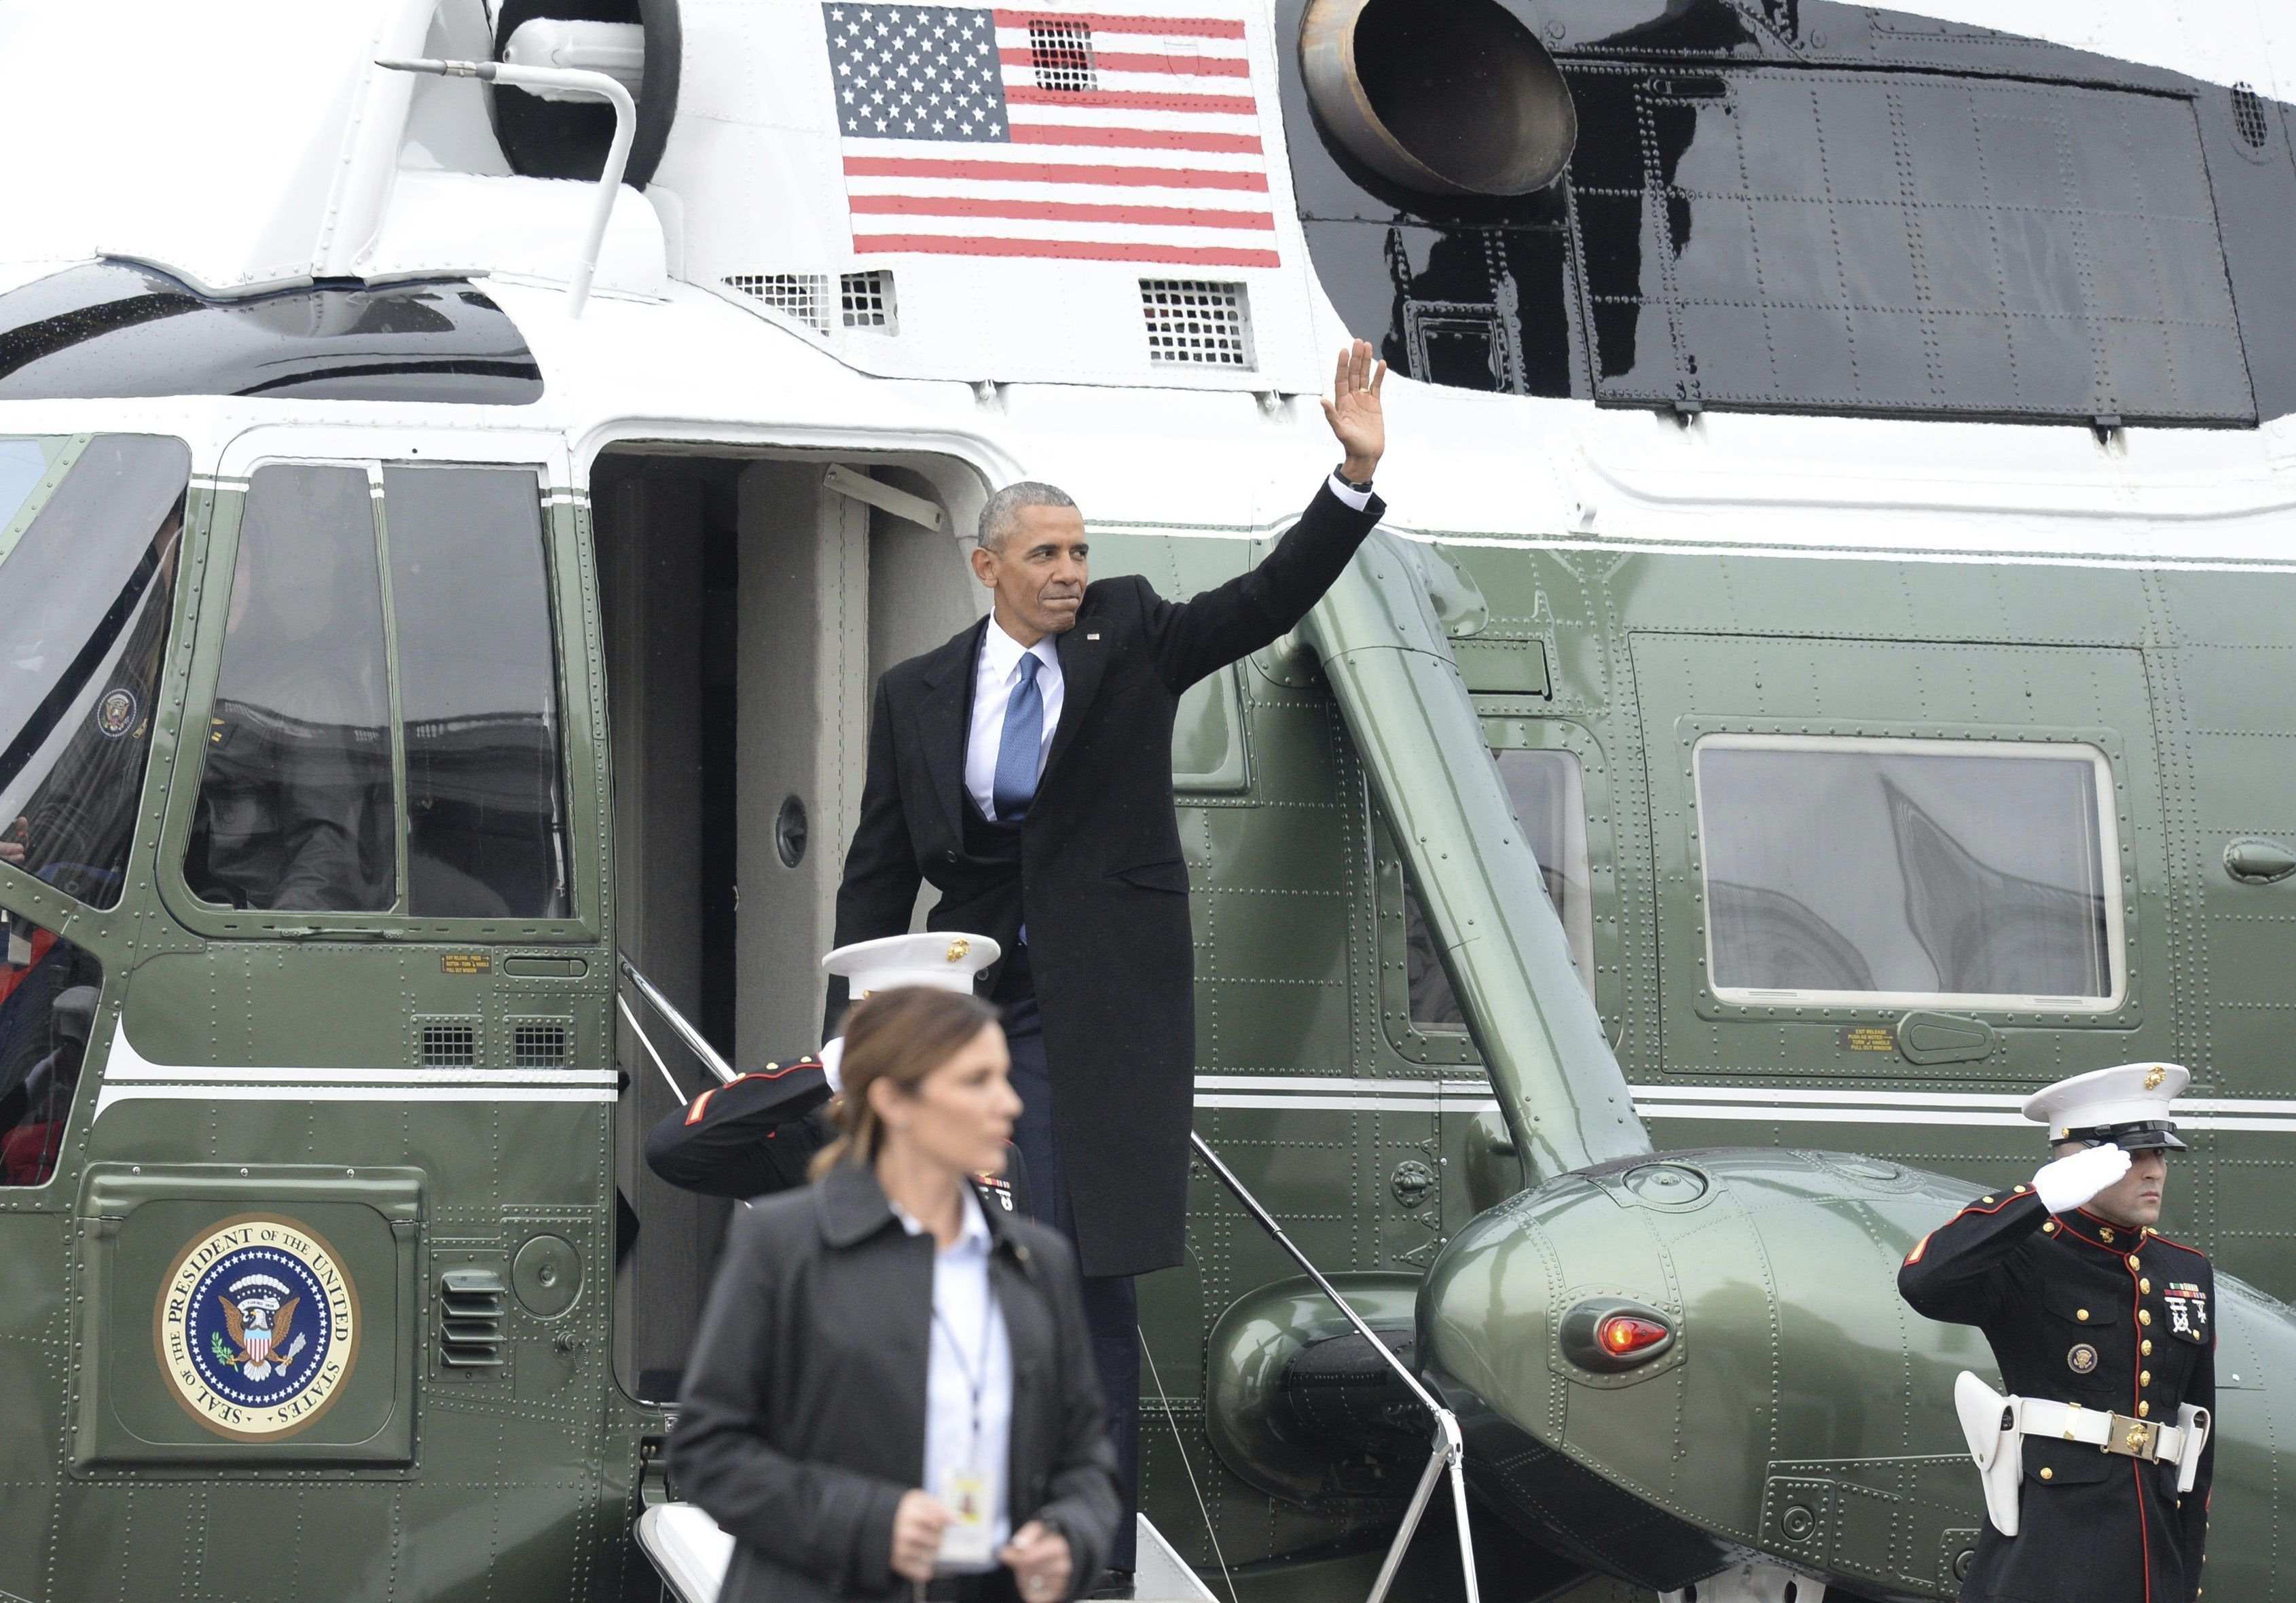 Obama diu l'últim adéu: "Ha estat el privilegi de la meva vida"